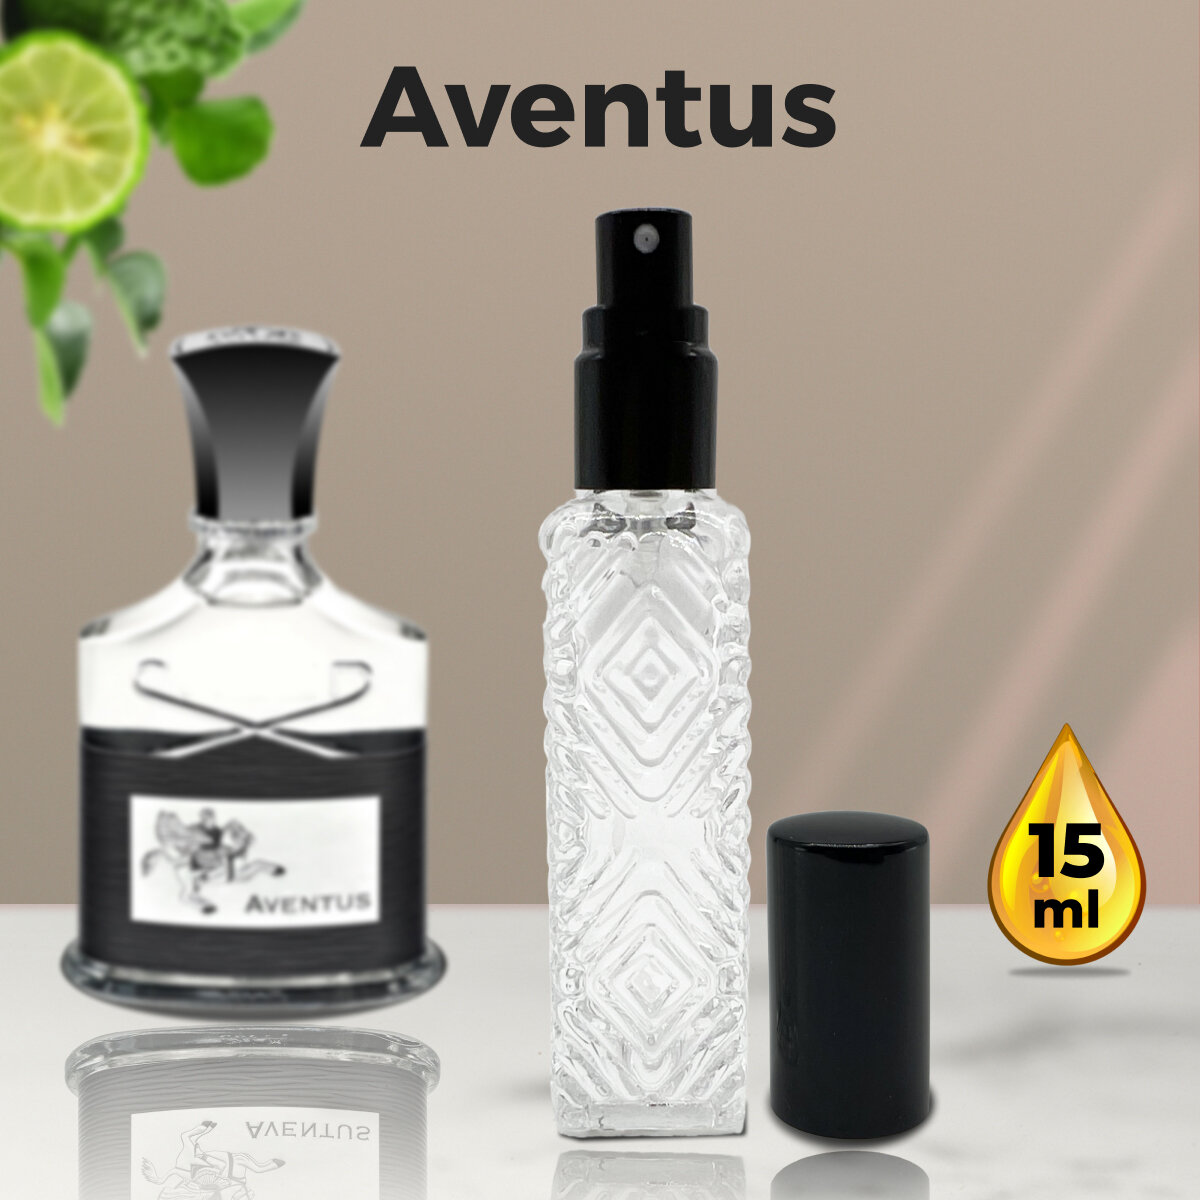 Gratus Parfum creed-aventus